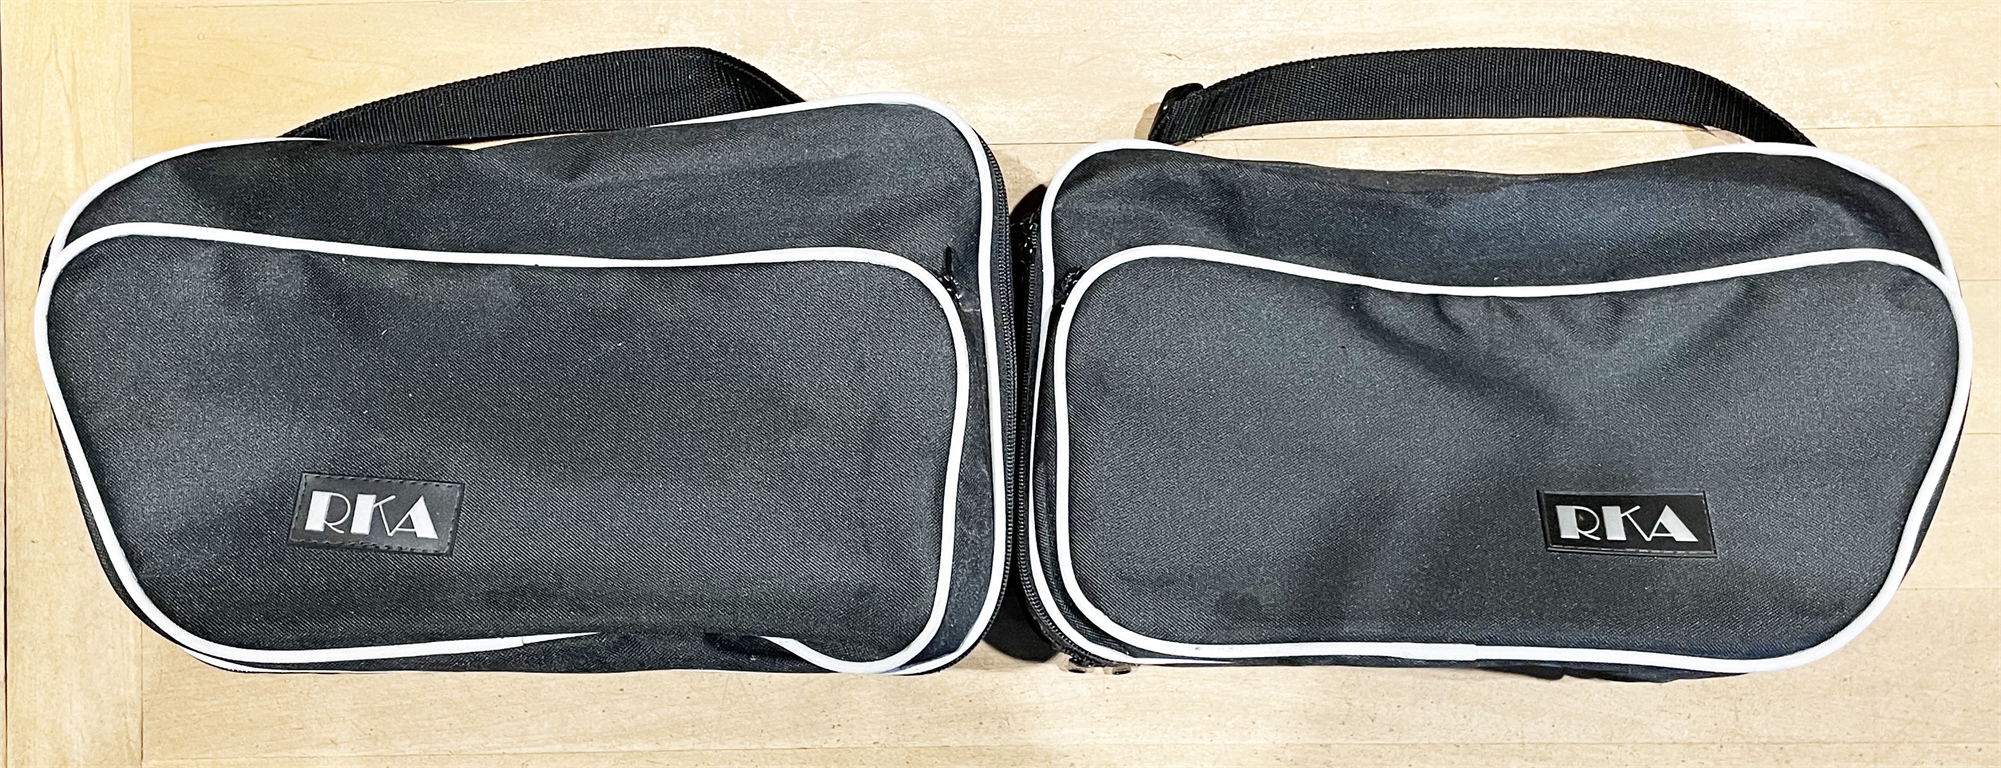 RKA K1600GTL pair of side case bags